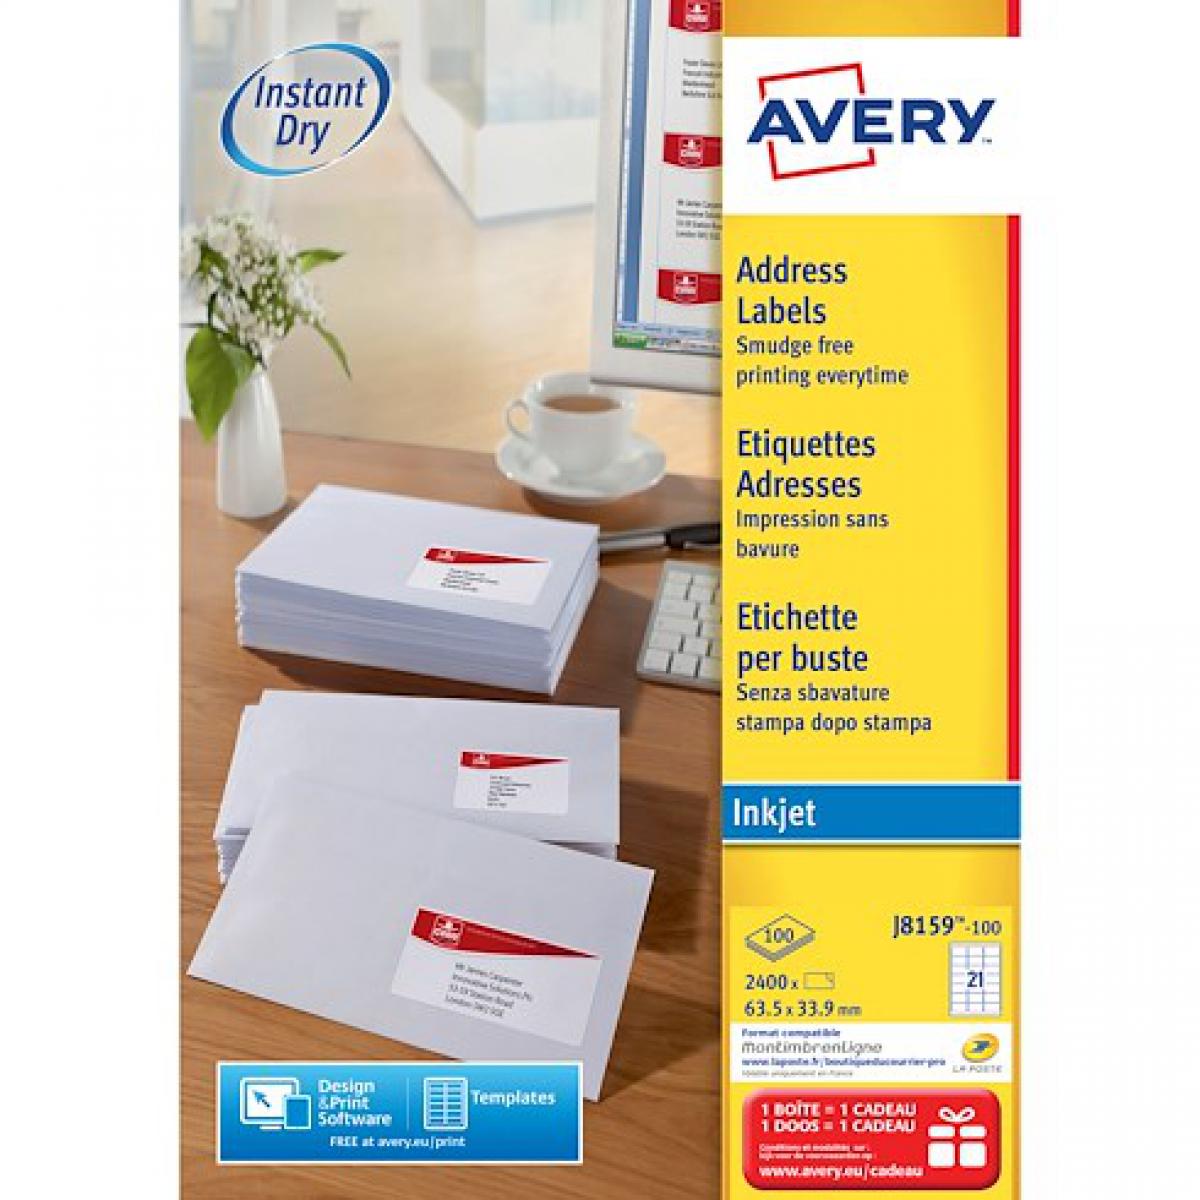 Avery - Etiquettes adresses jet d'encre 63,5 x 33,9 mm Avery J8159-100 - Boîte de 2400 - Accessoires Bureau